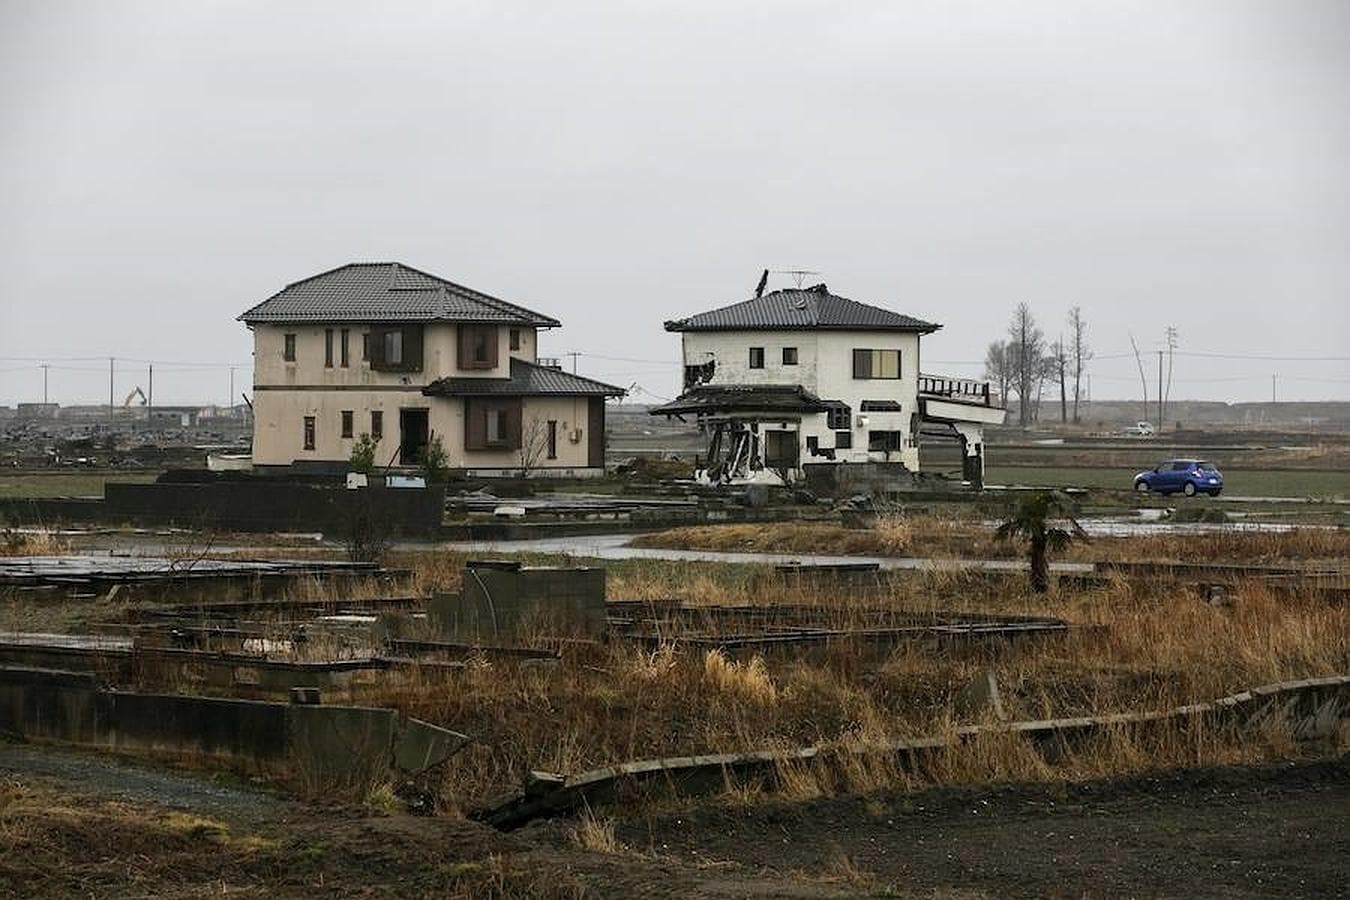 Vista general del distrito destruido de Ukedo, cerca de la central nuclear de Fukushima Daiichi en Namie, Japón, 